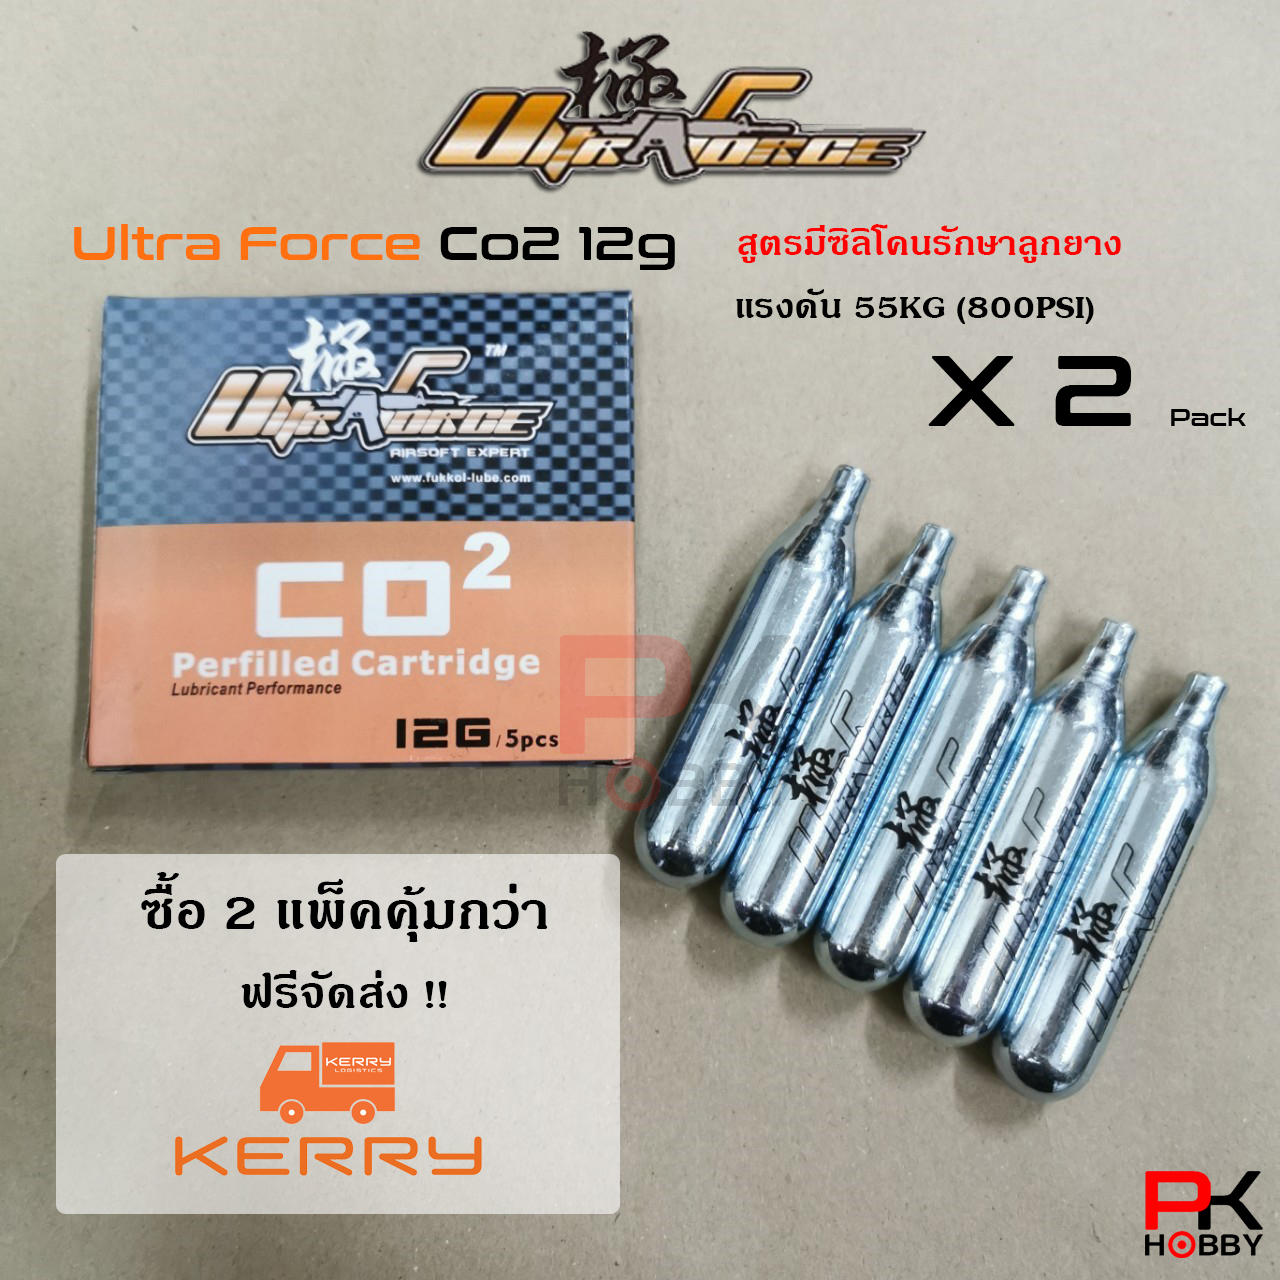 UltraForce Co2 12g 55KG ผลิตและนำเข้าจากประเทศจีน จำนวน 2 แพ็ค 10 หลอด (ส่งฟรี Kerry!!)